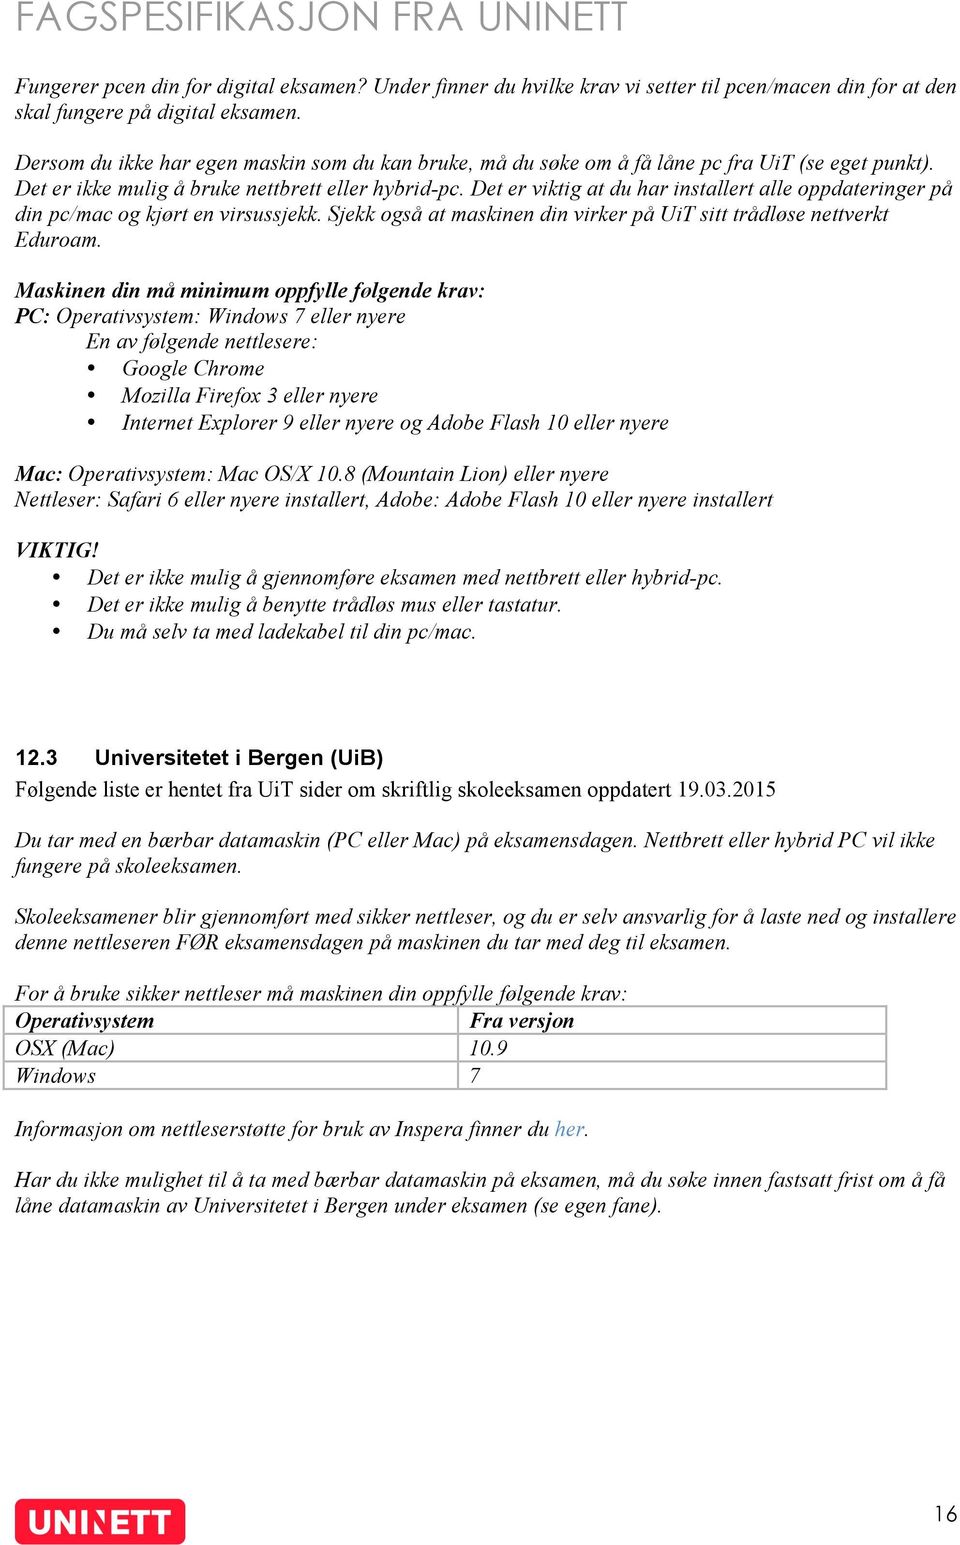 Fagspesifikasjon. Klienter for digital eksamen - PDF Gratis nedlasting